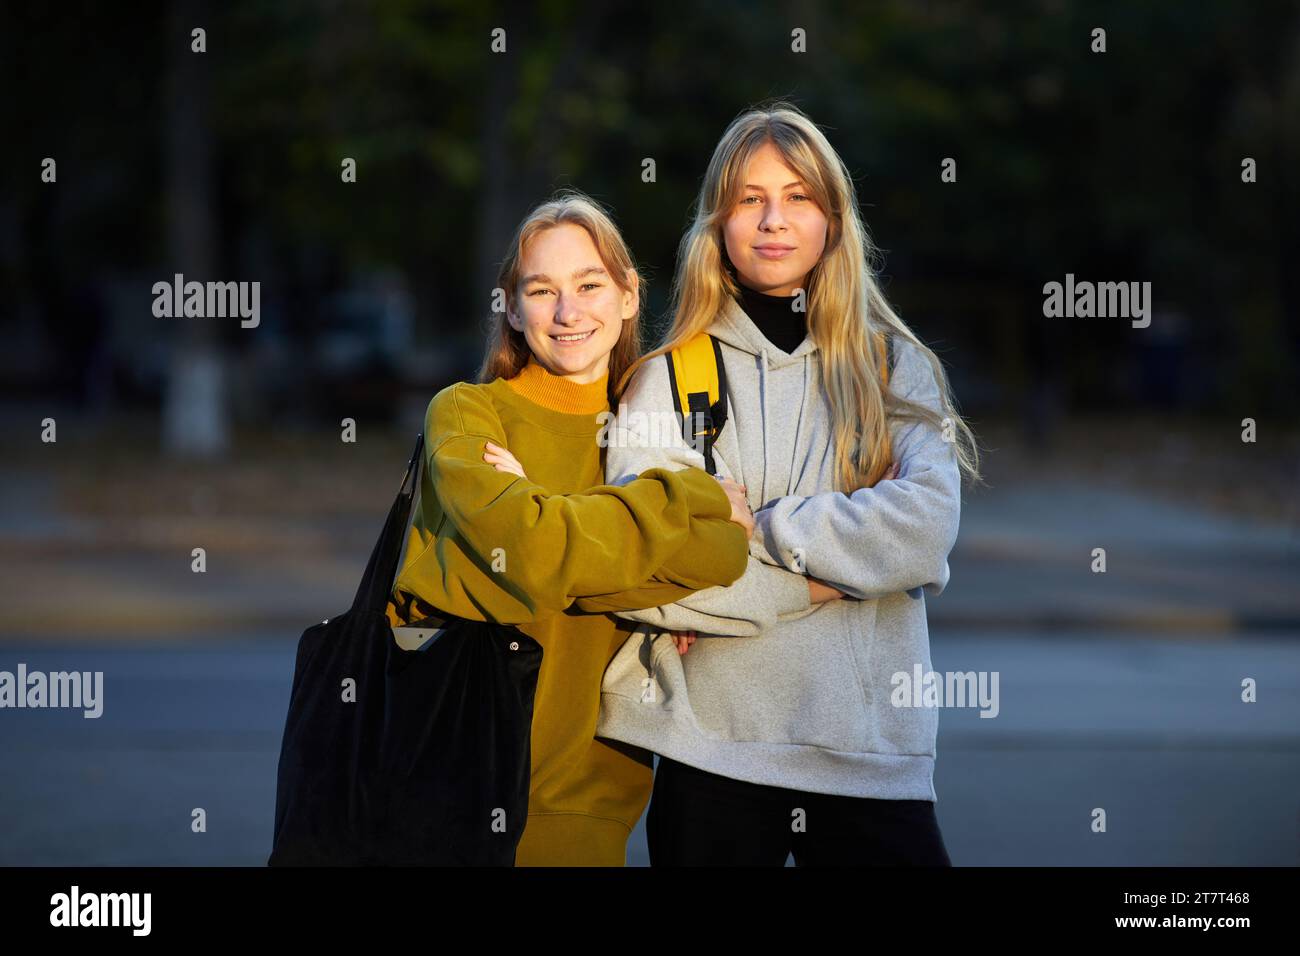 Porträt zweier lächelnder junger Frauen draußen Stockfoto